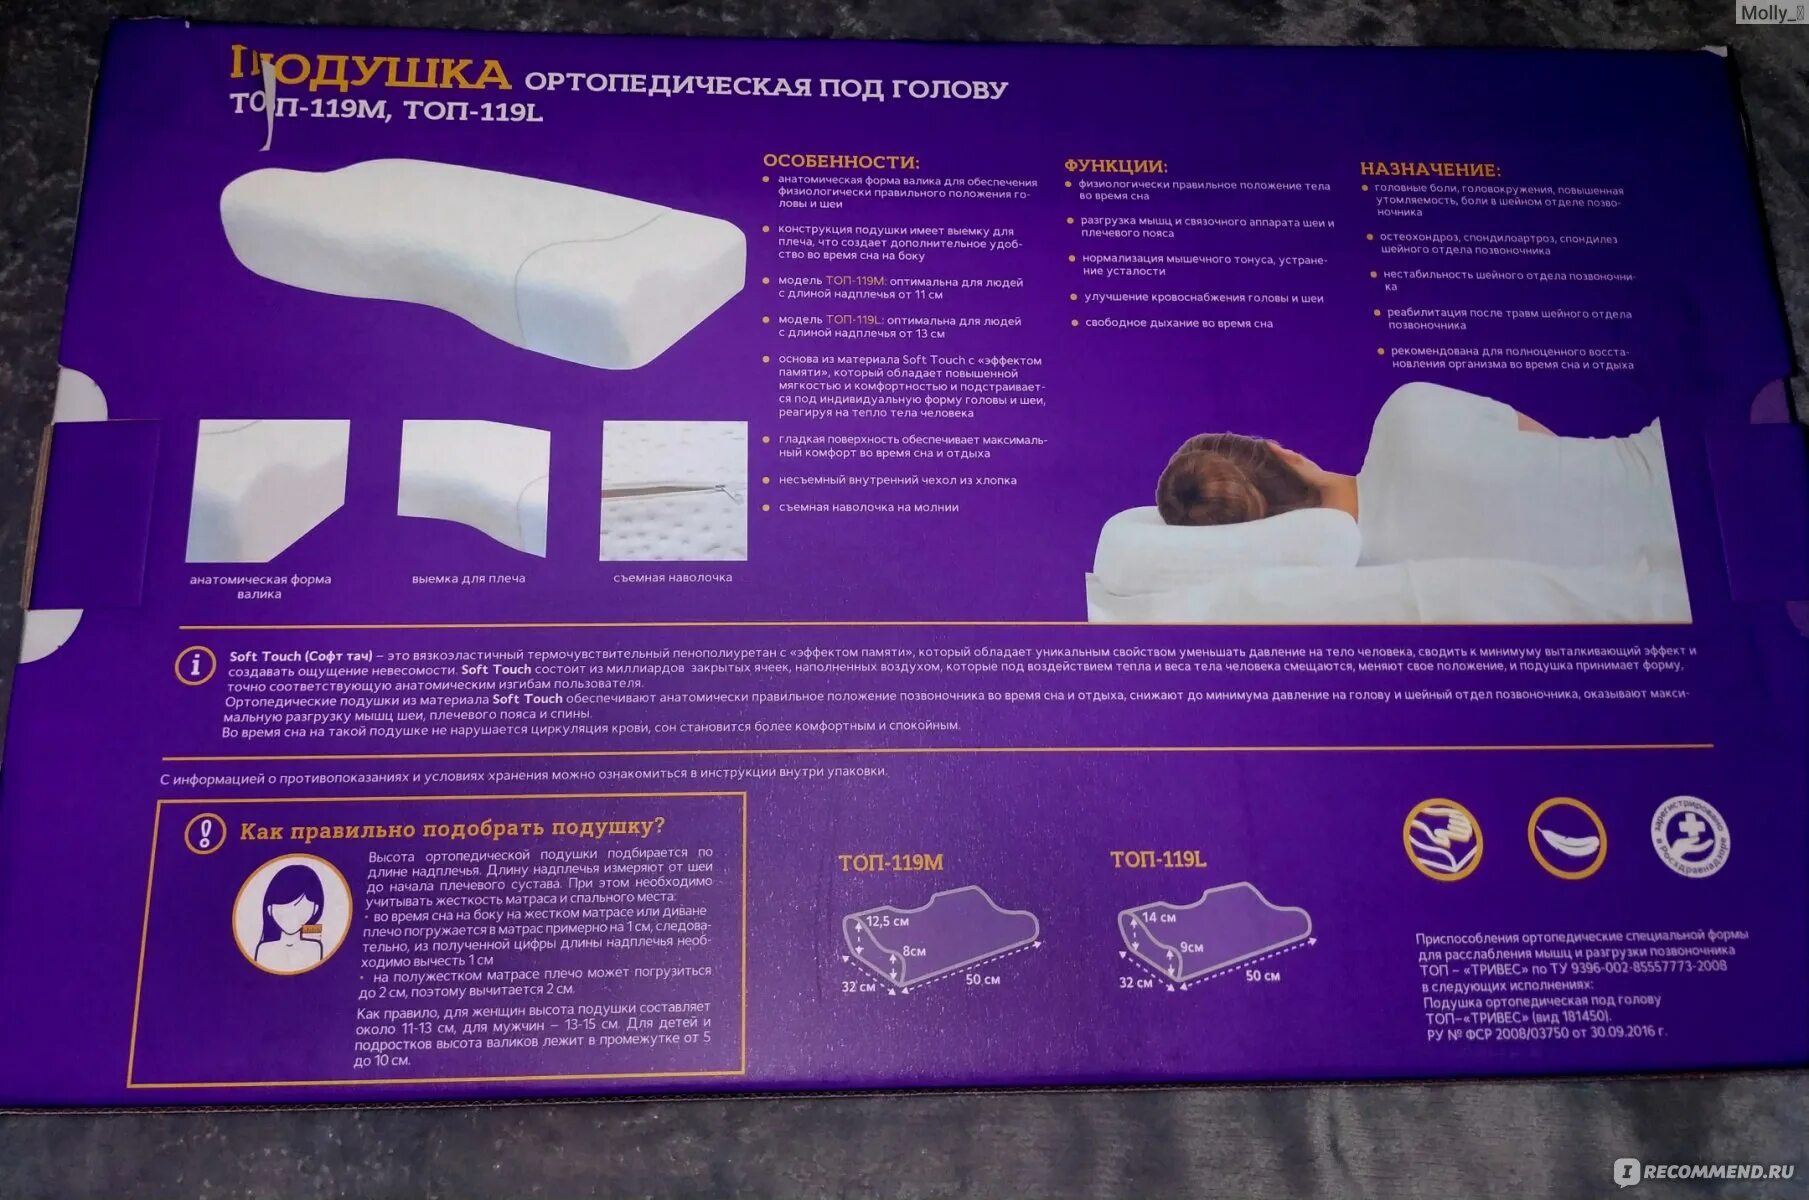 Ортопедическая подушка trives коробка. Правильная подушка для сна. Ортопедические подушки для сна при остеохондрозе. Правильная ортопедическая подушка для сна.